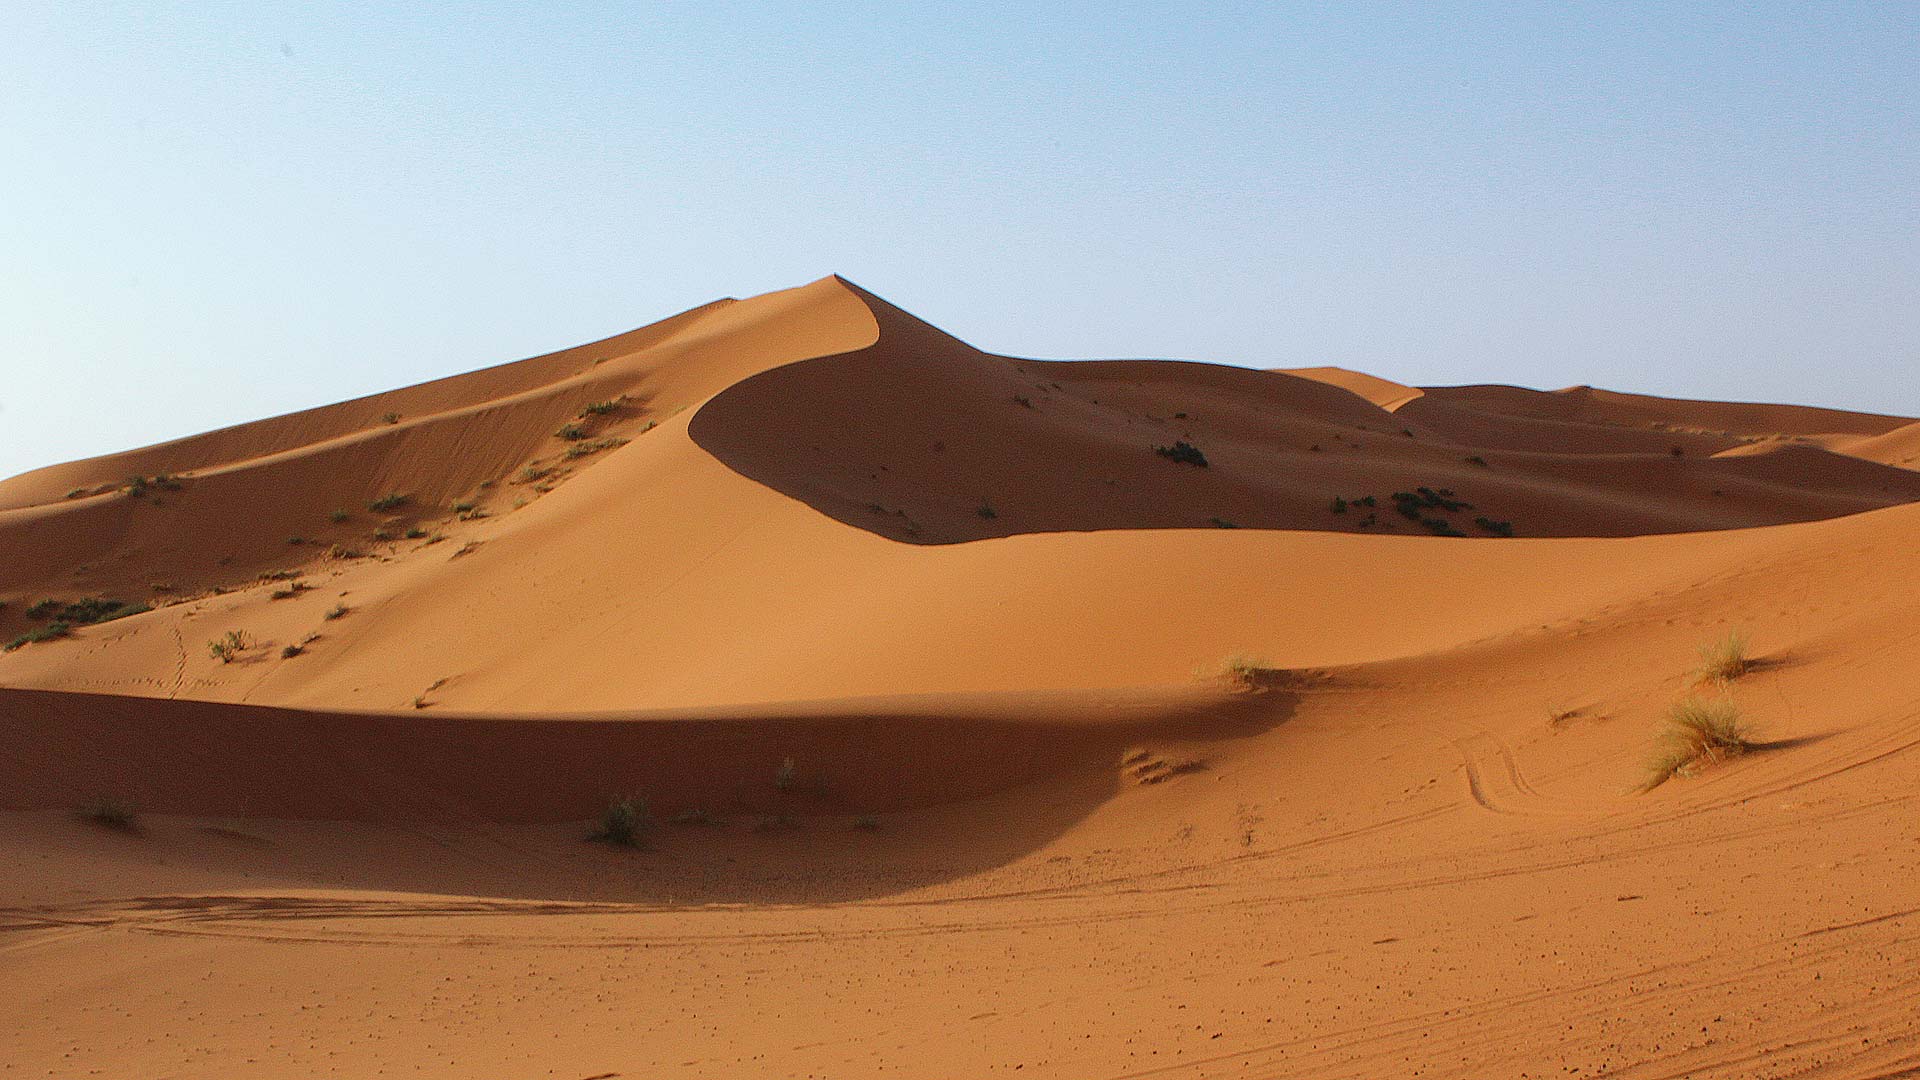 From fez to marrakech through the desert